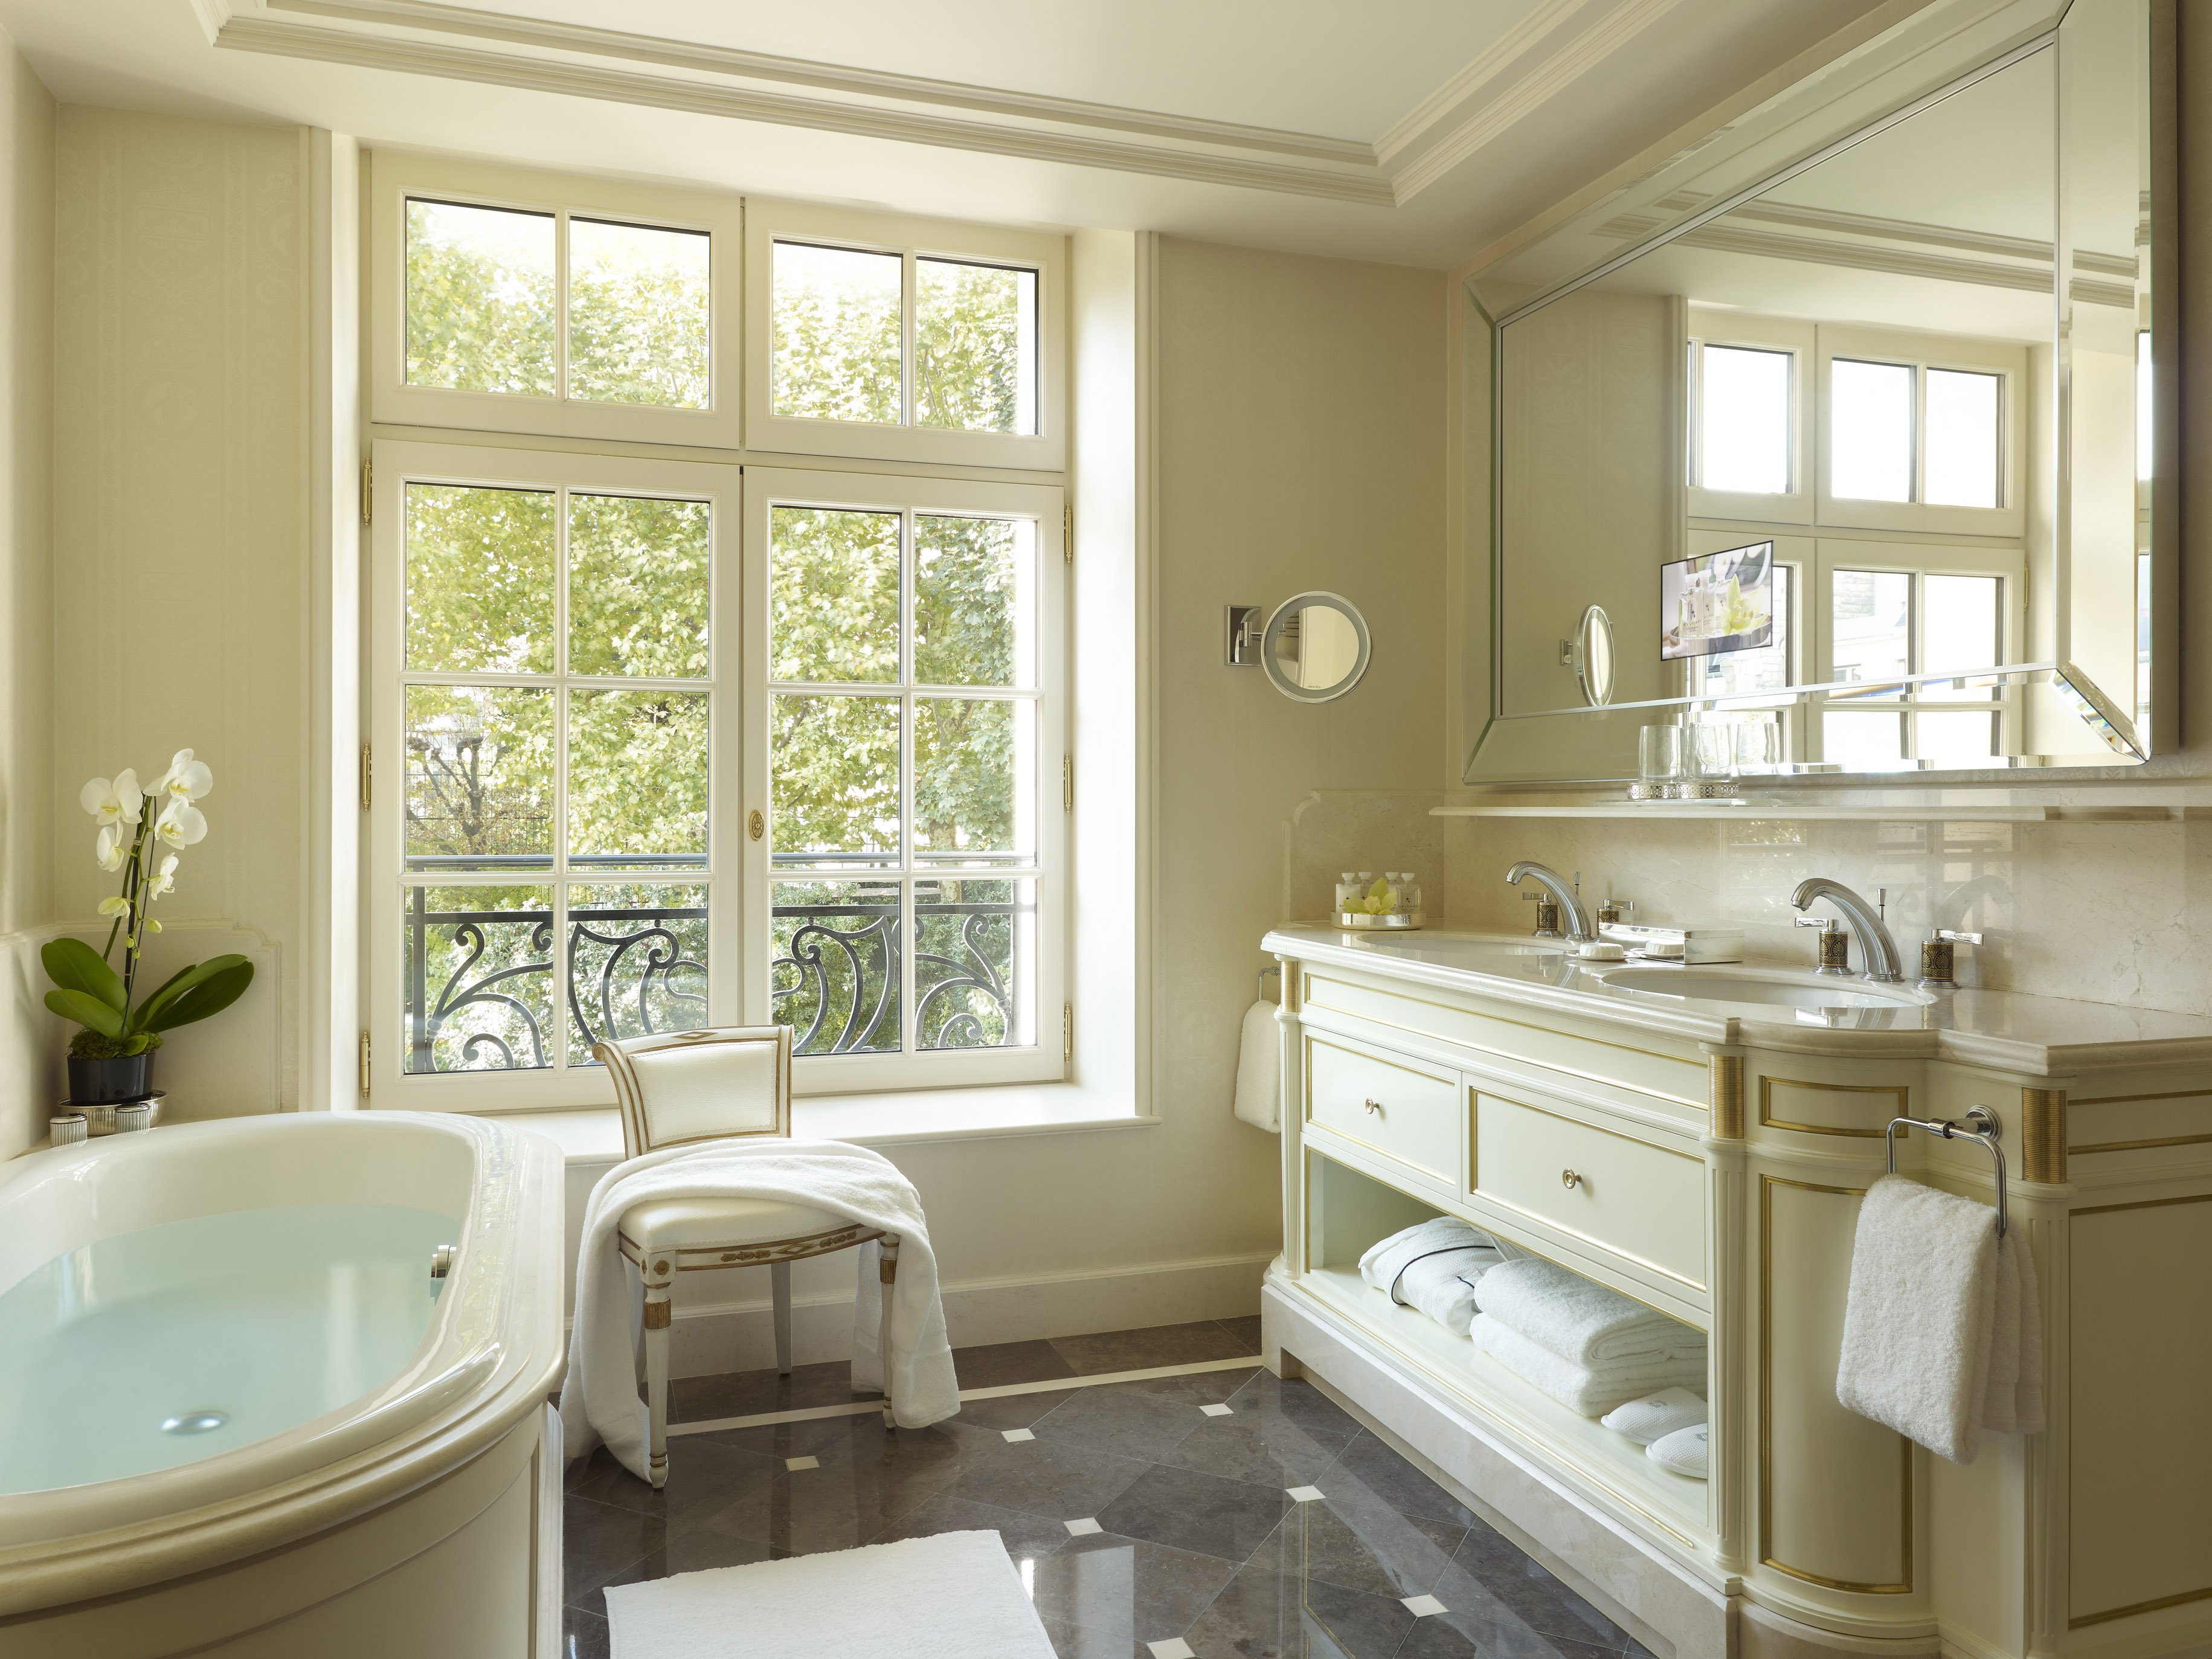 S vanna. Шангри ла Париж. Ванная комната с окном. Небольшая ванная с окном. Уютная ванная комната.